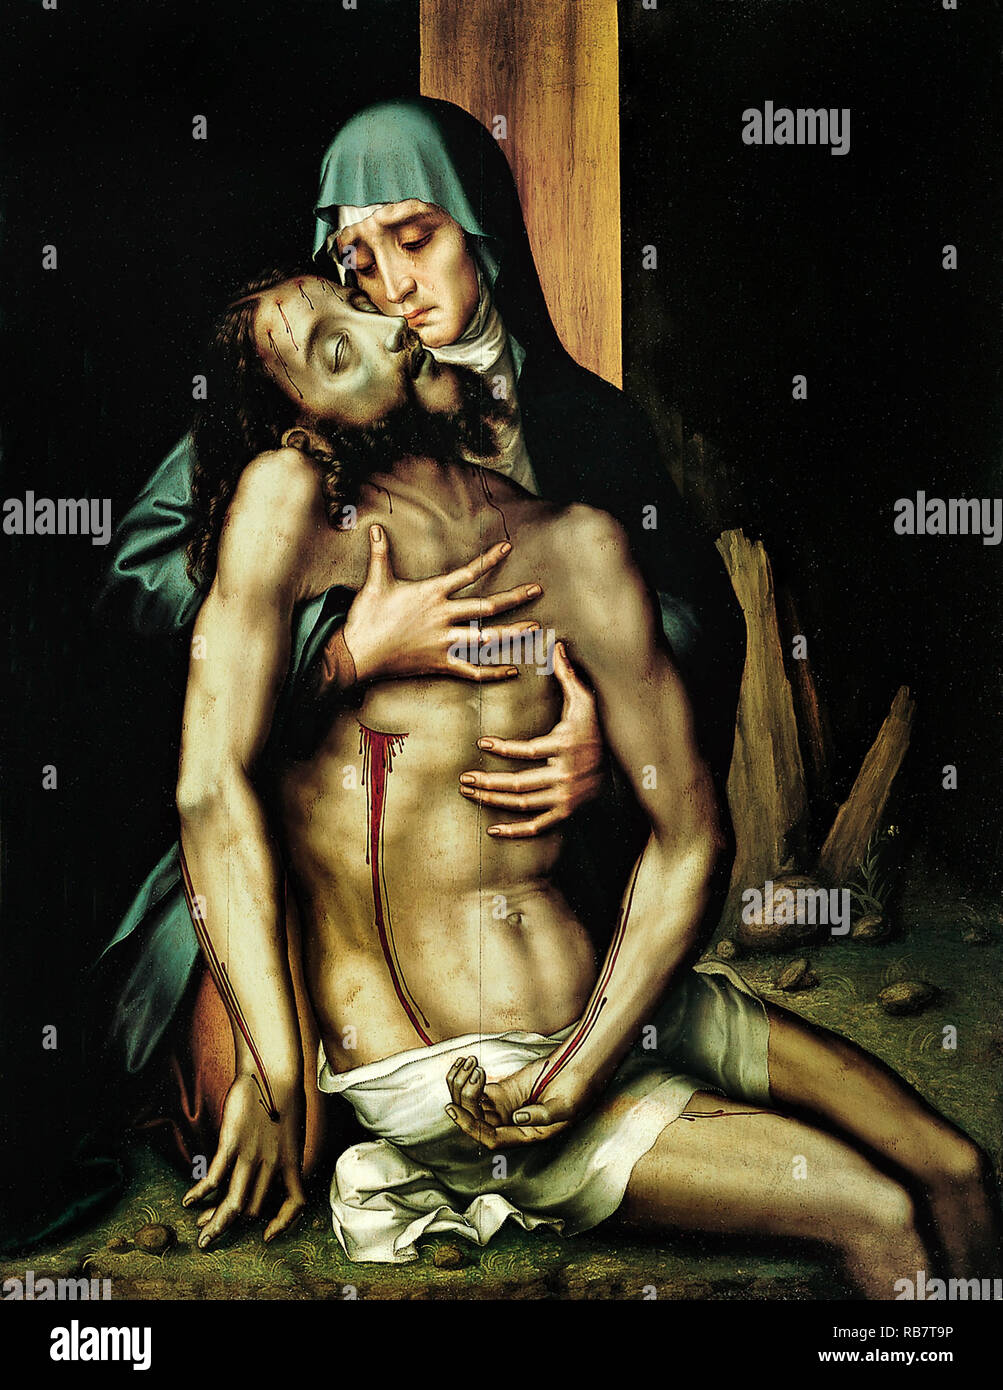 Luis de Morales, La Piedad, Jesus Christ Dead in the Arms of his Mother, the Virgin Mary, Circa 1570 Oil on wood, Real Academia de Bellas Artes de San Fernando, Madrid, Spain. Stock Photo